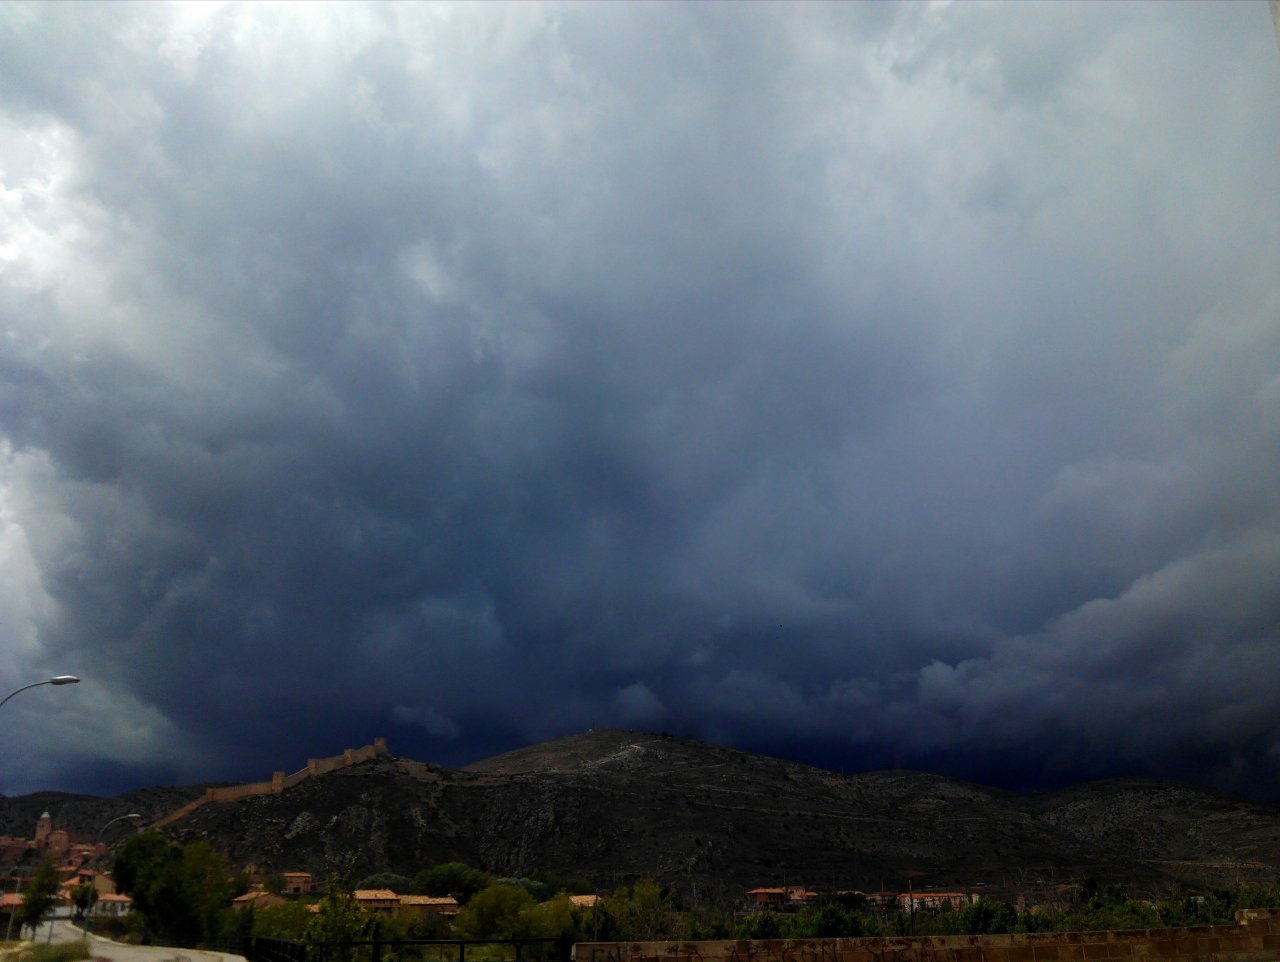 Tarde de tormenta, tarde de visita guiada en Albarracín